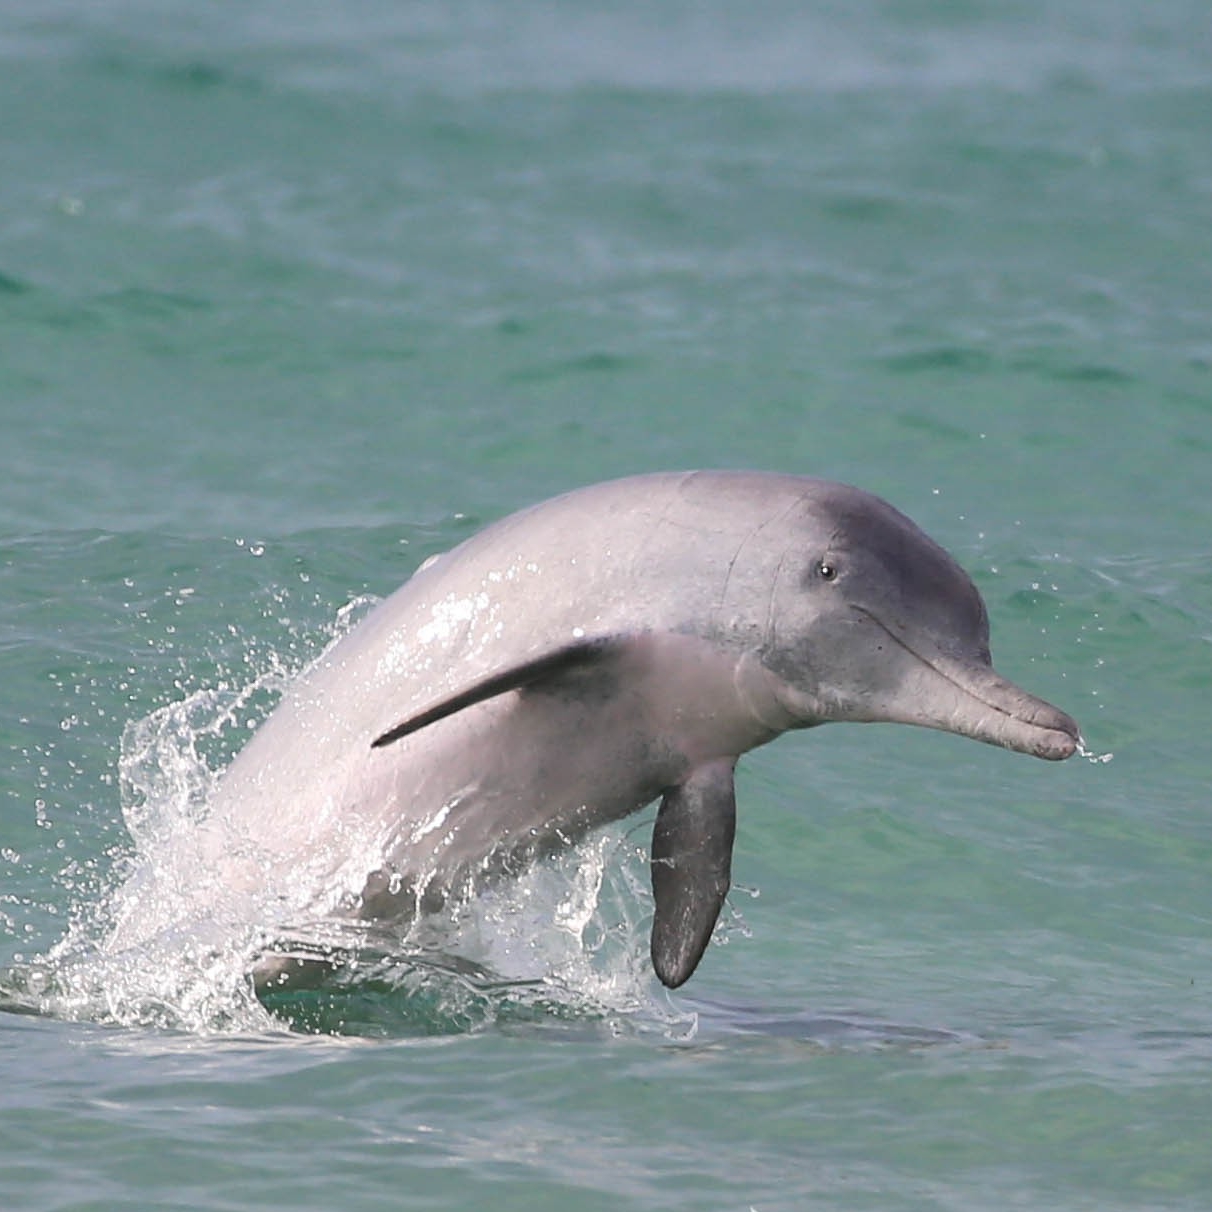 昆士兰州摩顿湾附近的新生瓶鼻海豚 © 澳大利亚海豚研究中心版权所有